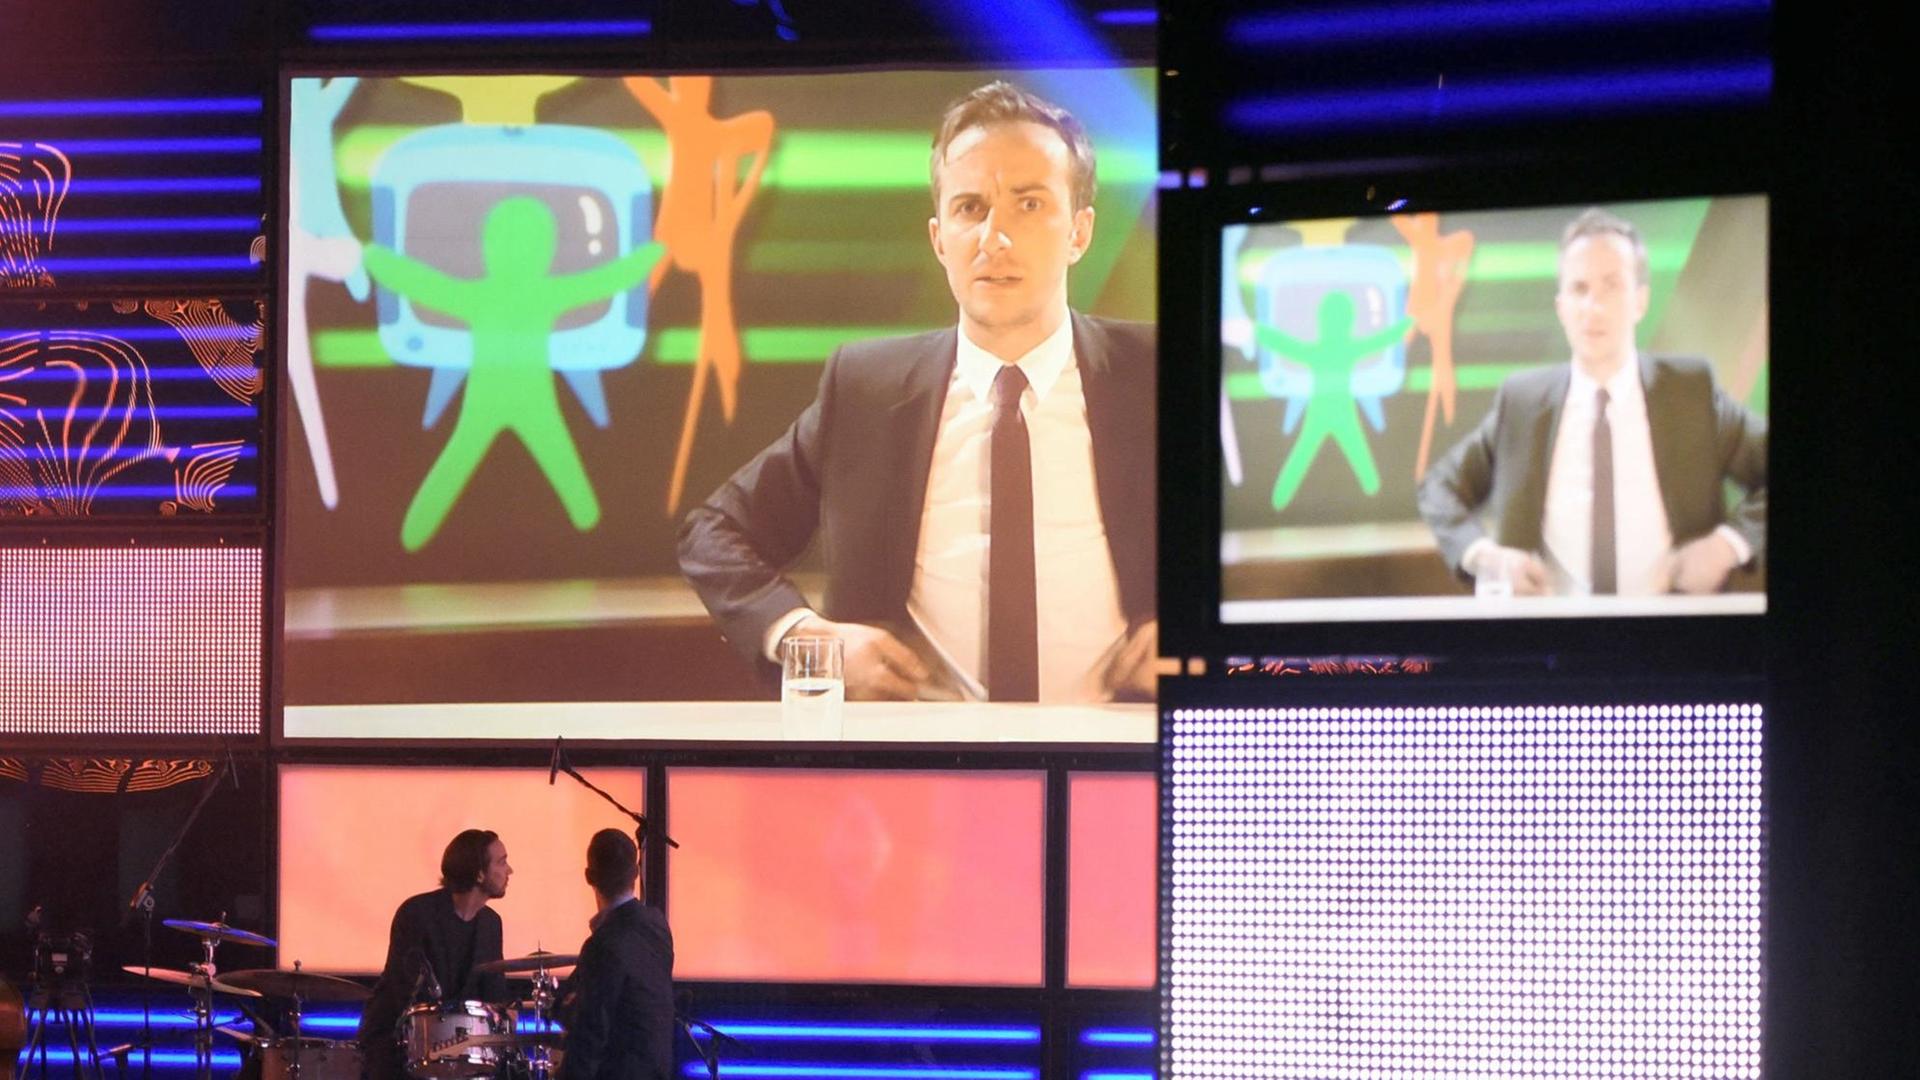 Der Träger des Ehrenpreises, Jan Böhmermann, ist am 08.04.2016 in Marl (Nordrhein-Westfalen) bei der Verleihung der Grimmepreise nur auf einem Bildschirm in einem Ausschnitt aus seiner Sendung "Neo Magazin Royale" zu sehen.